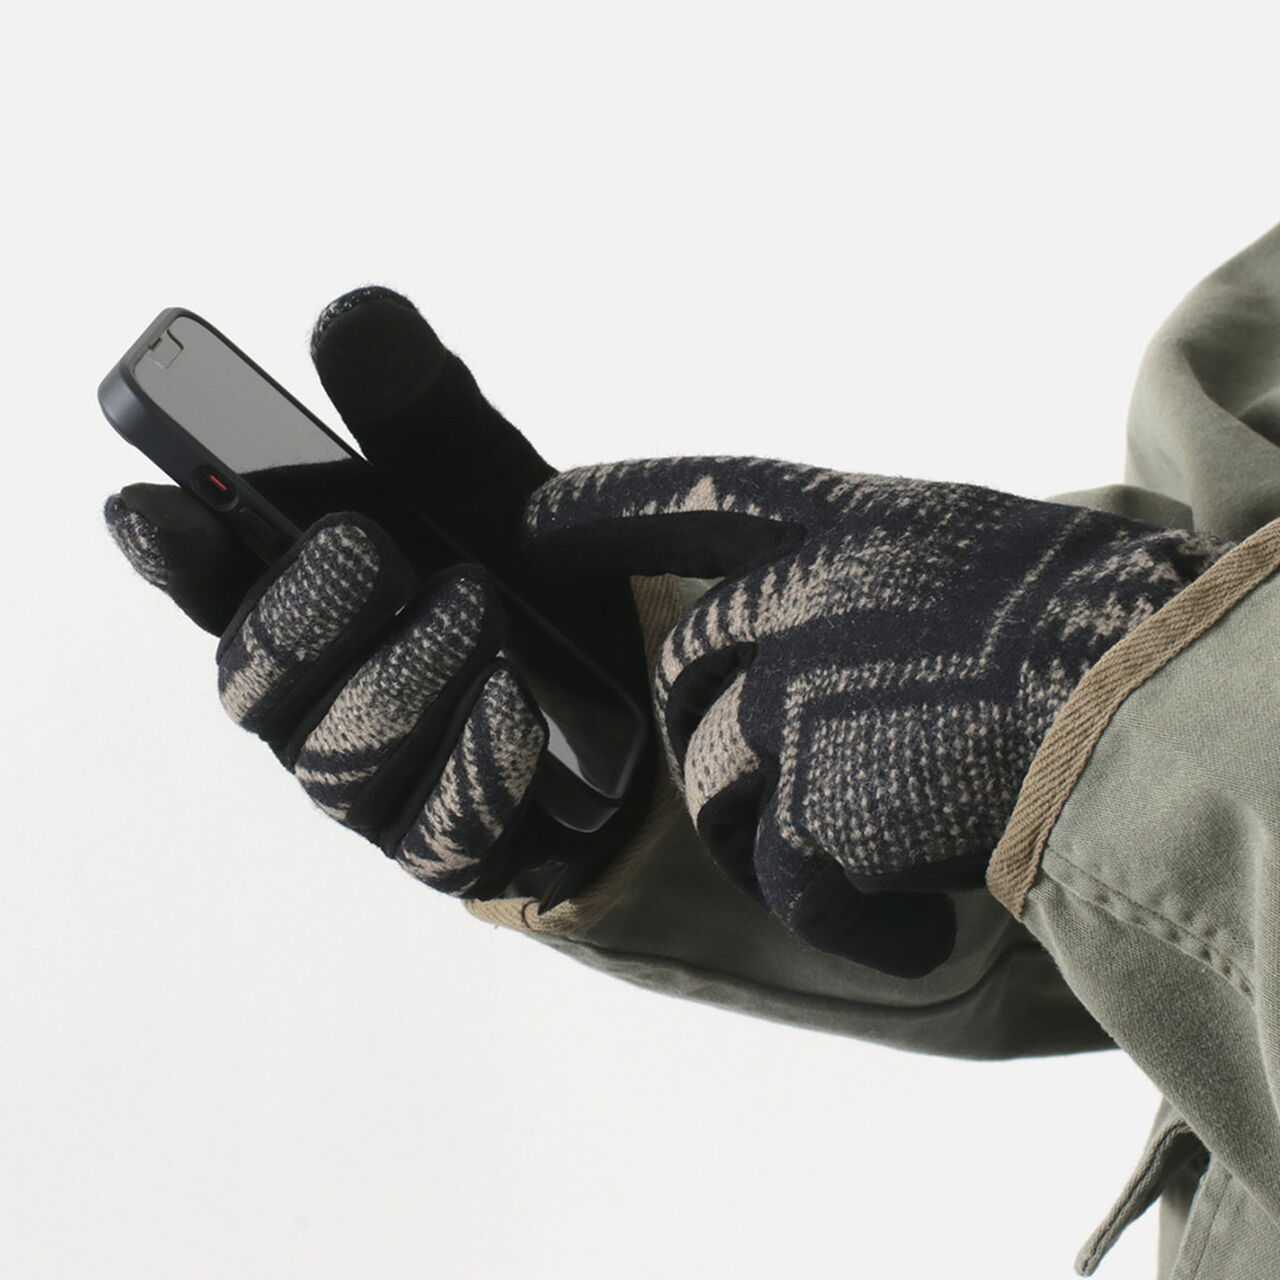 PENDLETON Wool gloves